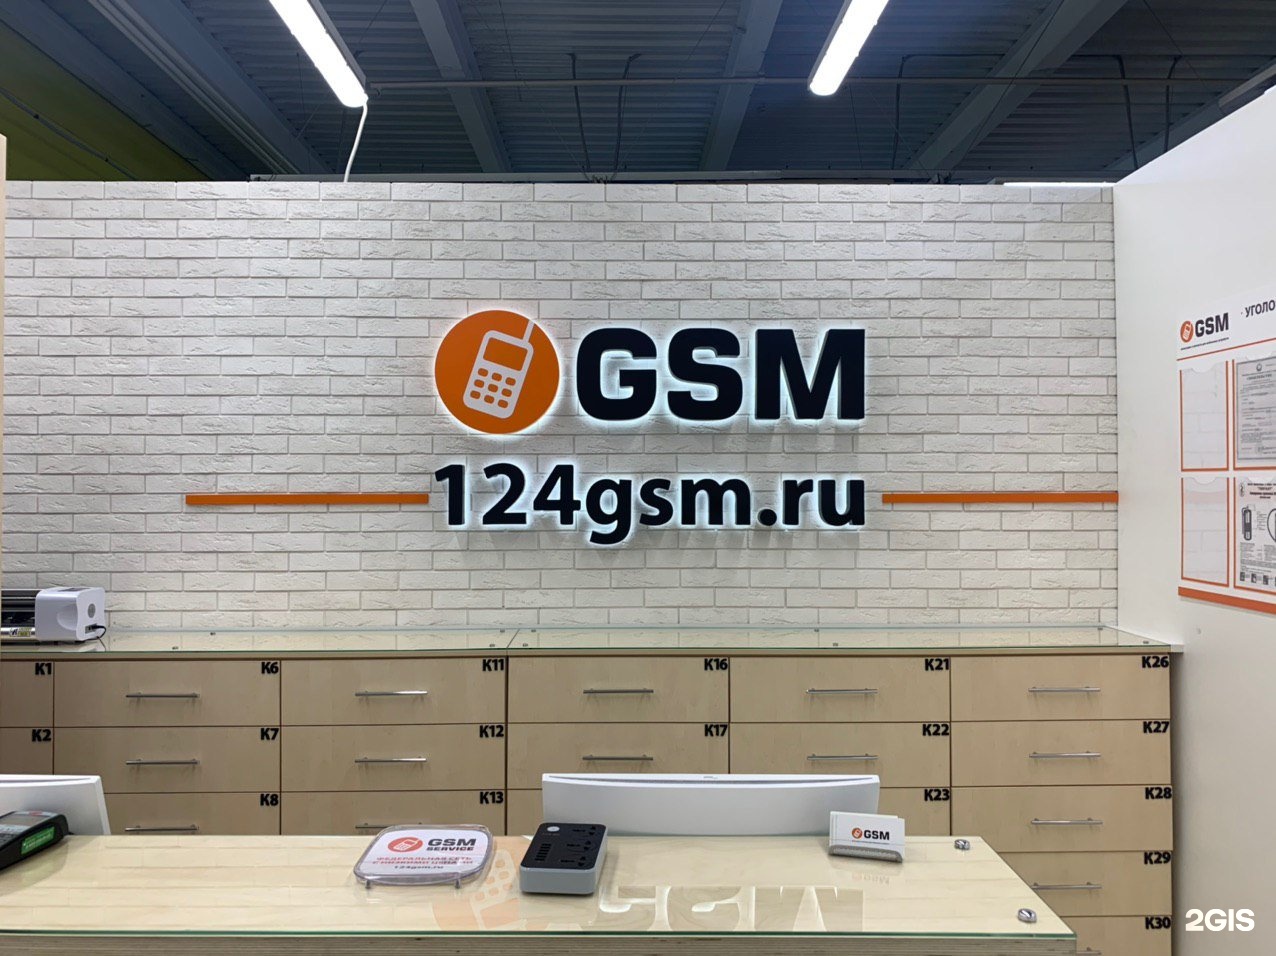 Ул gsm. Питер GSM. Питер GSM магазин СПБ. Лавка GSM. Магазин GSM Владивосток.